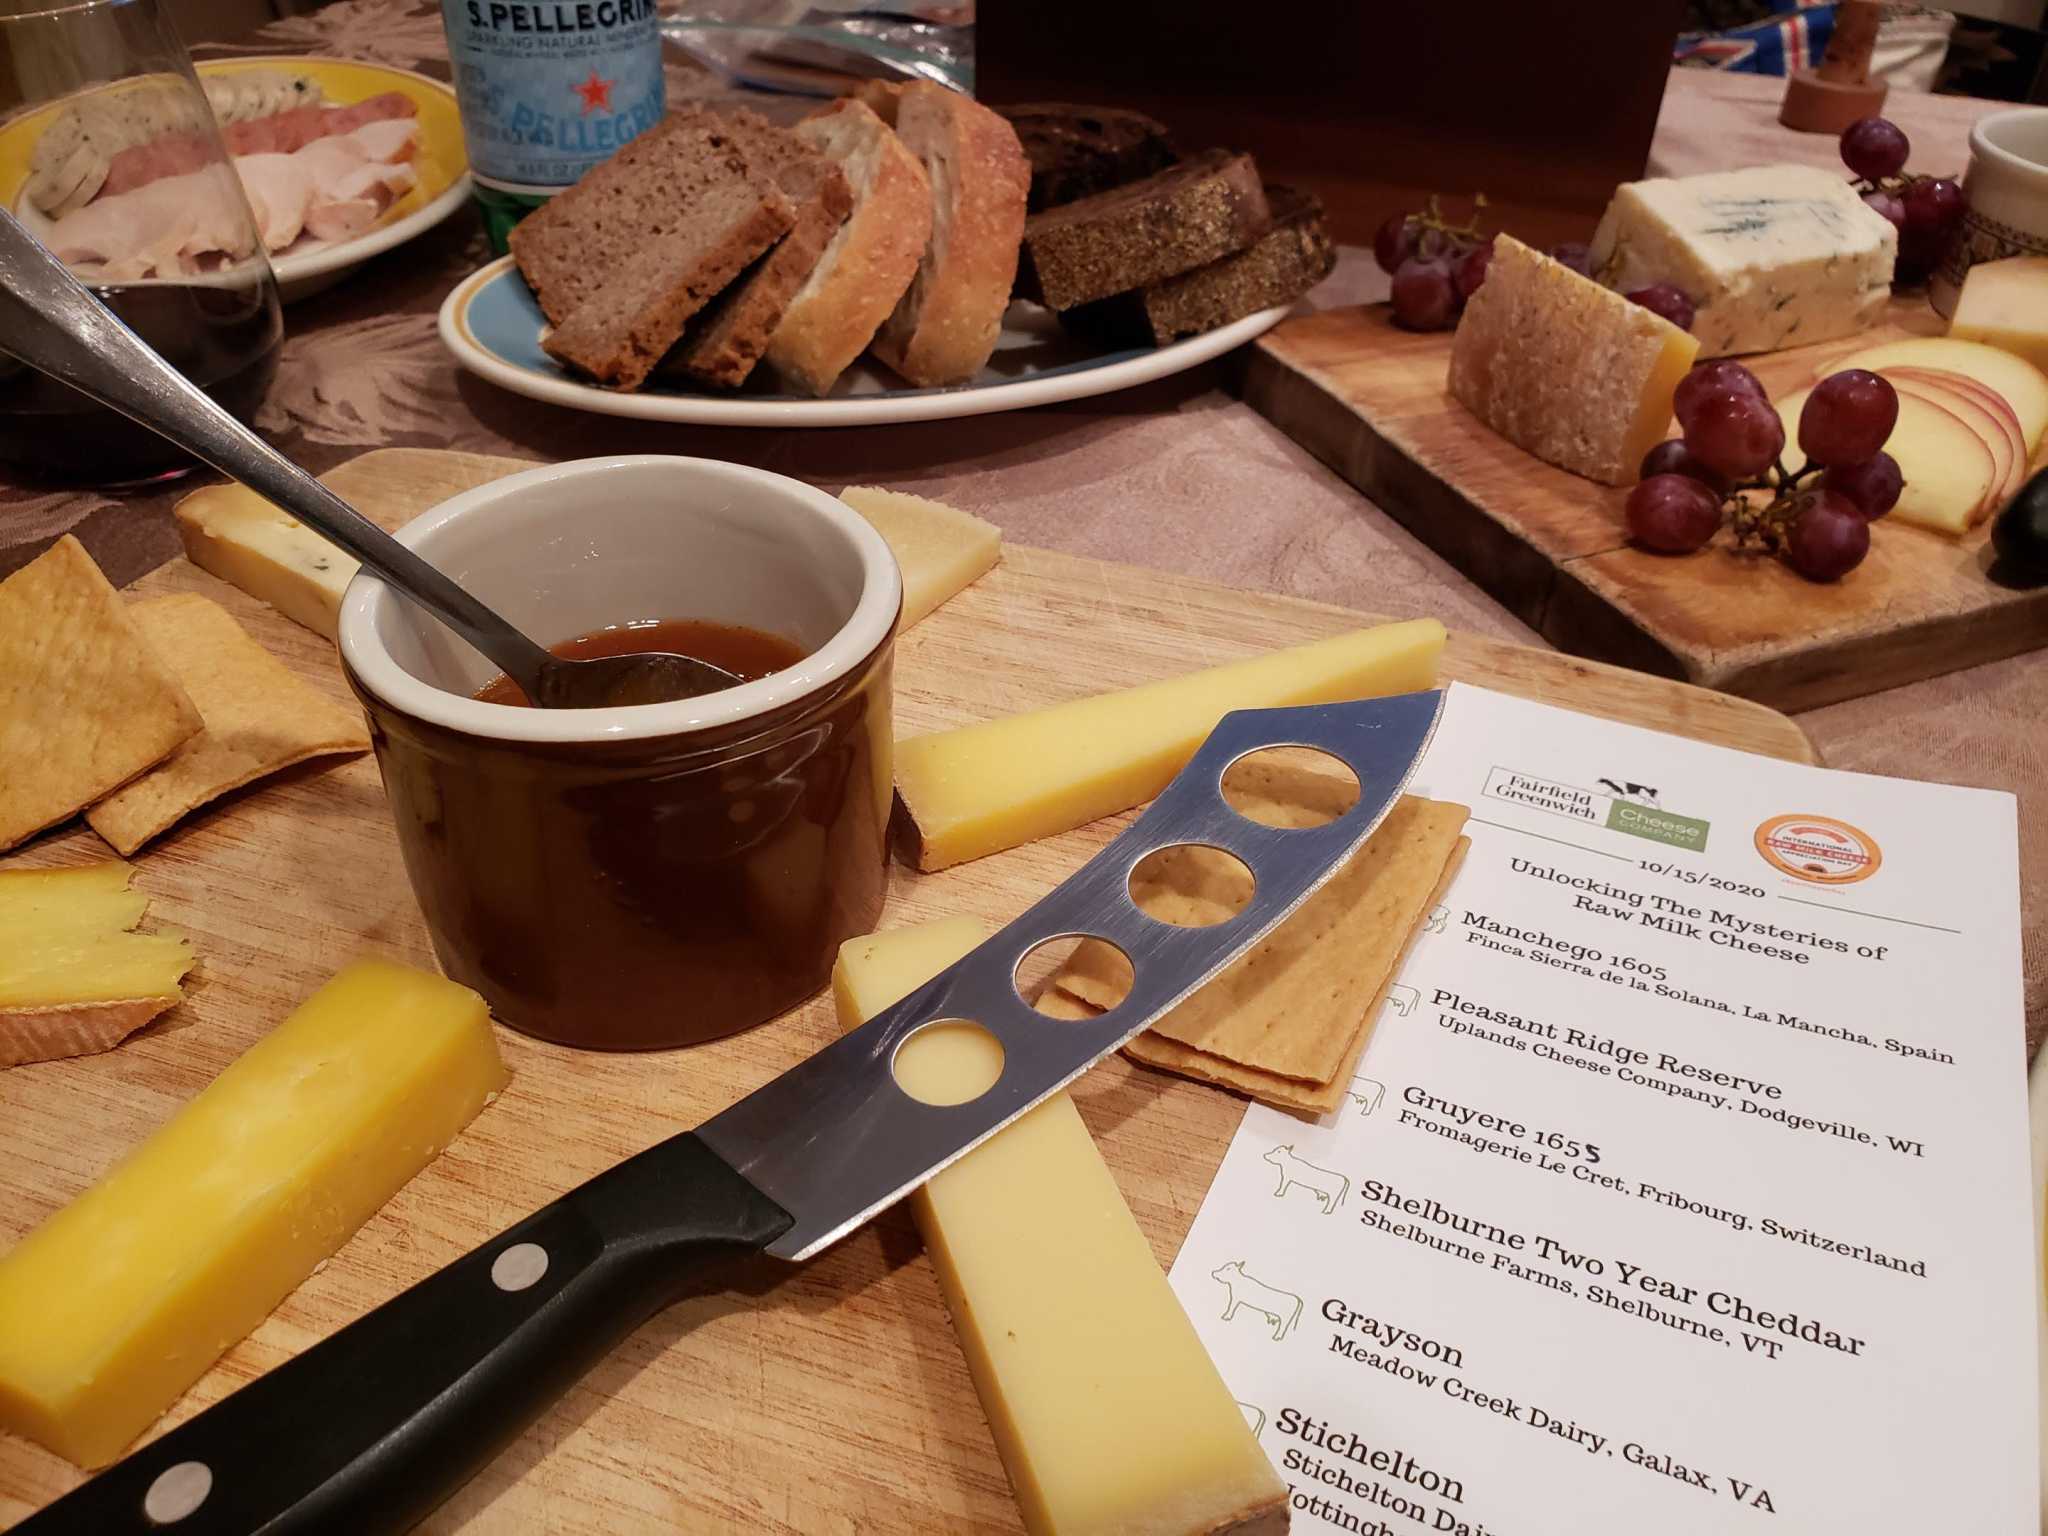 Le Cret 1655 Gruyere, Fondue Cheese